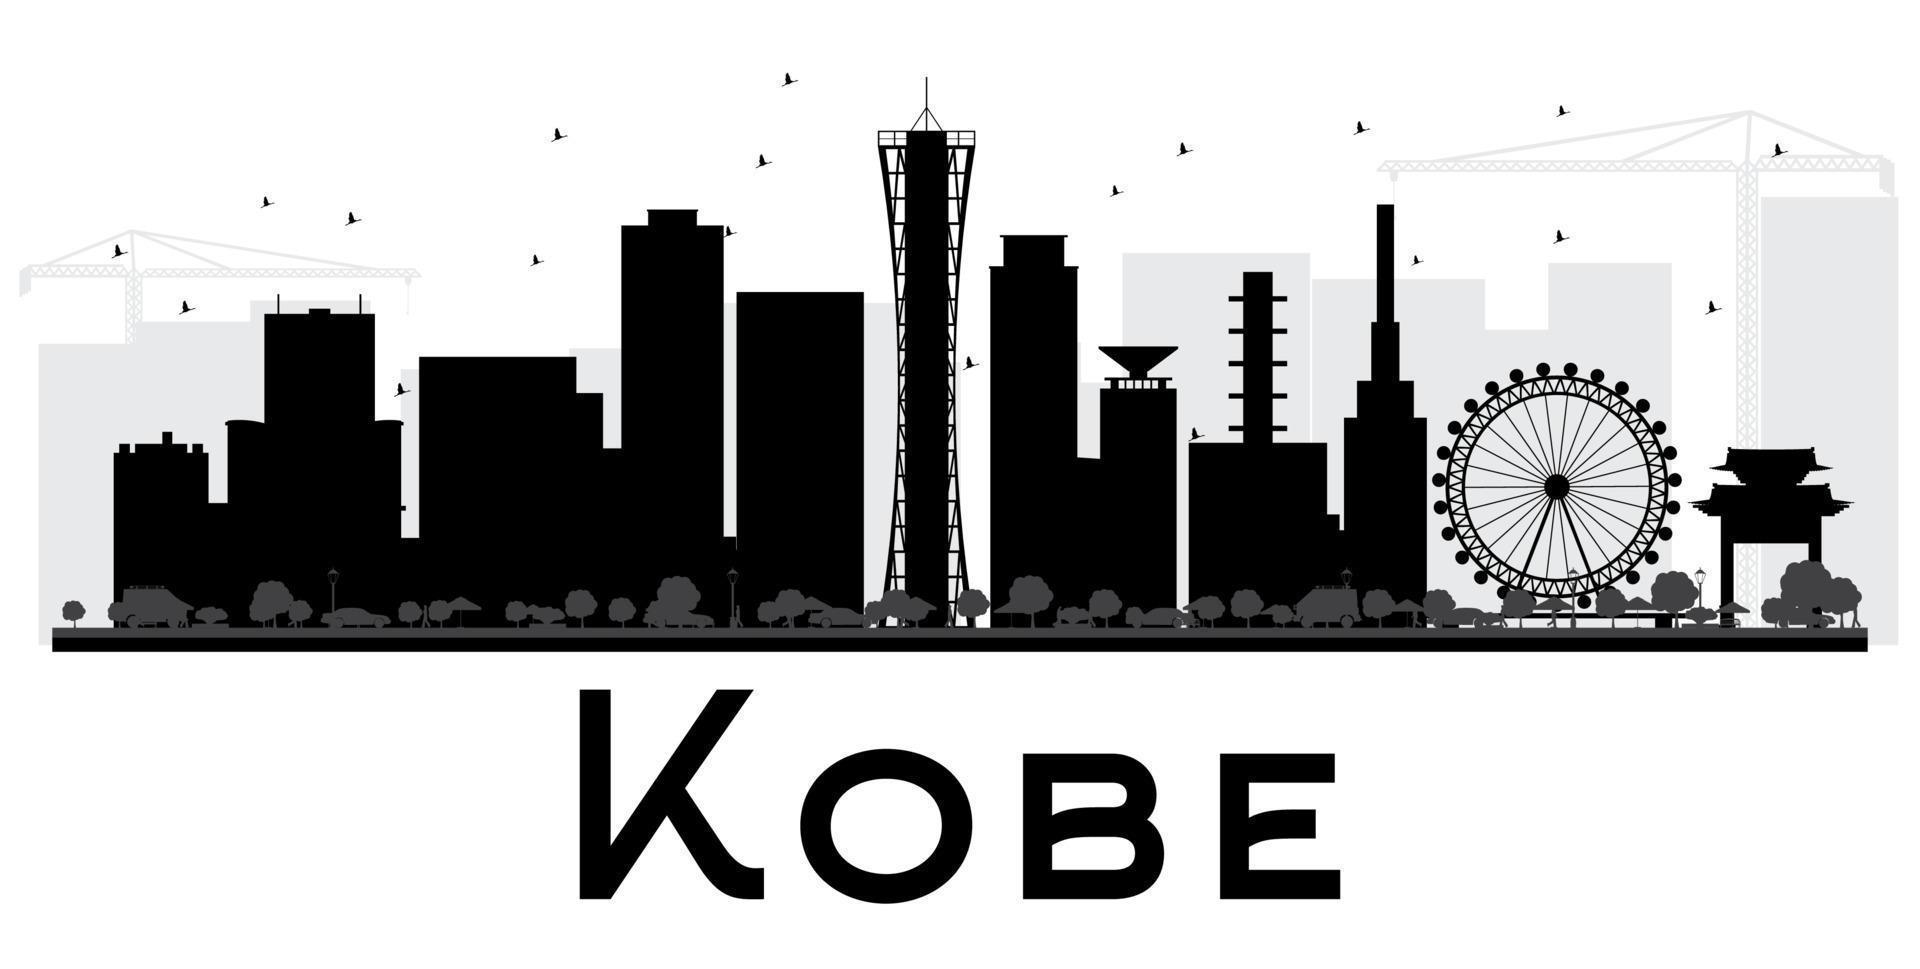 silueta en blanco y negro del horizonte de la ciudad de kobe. vector